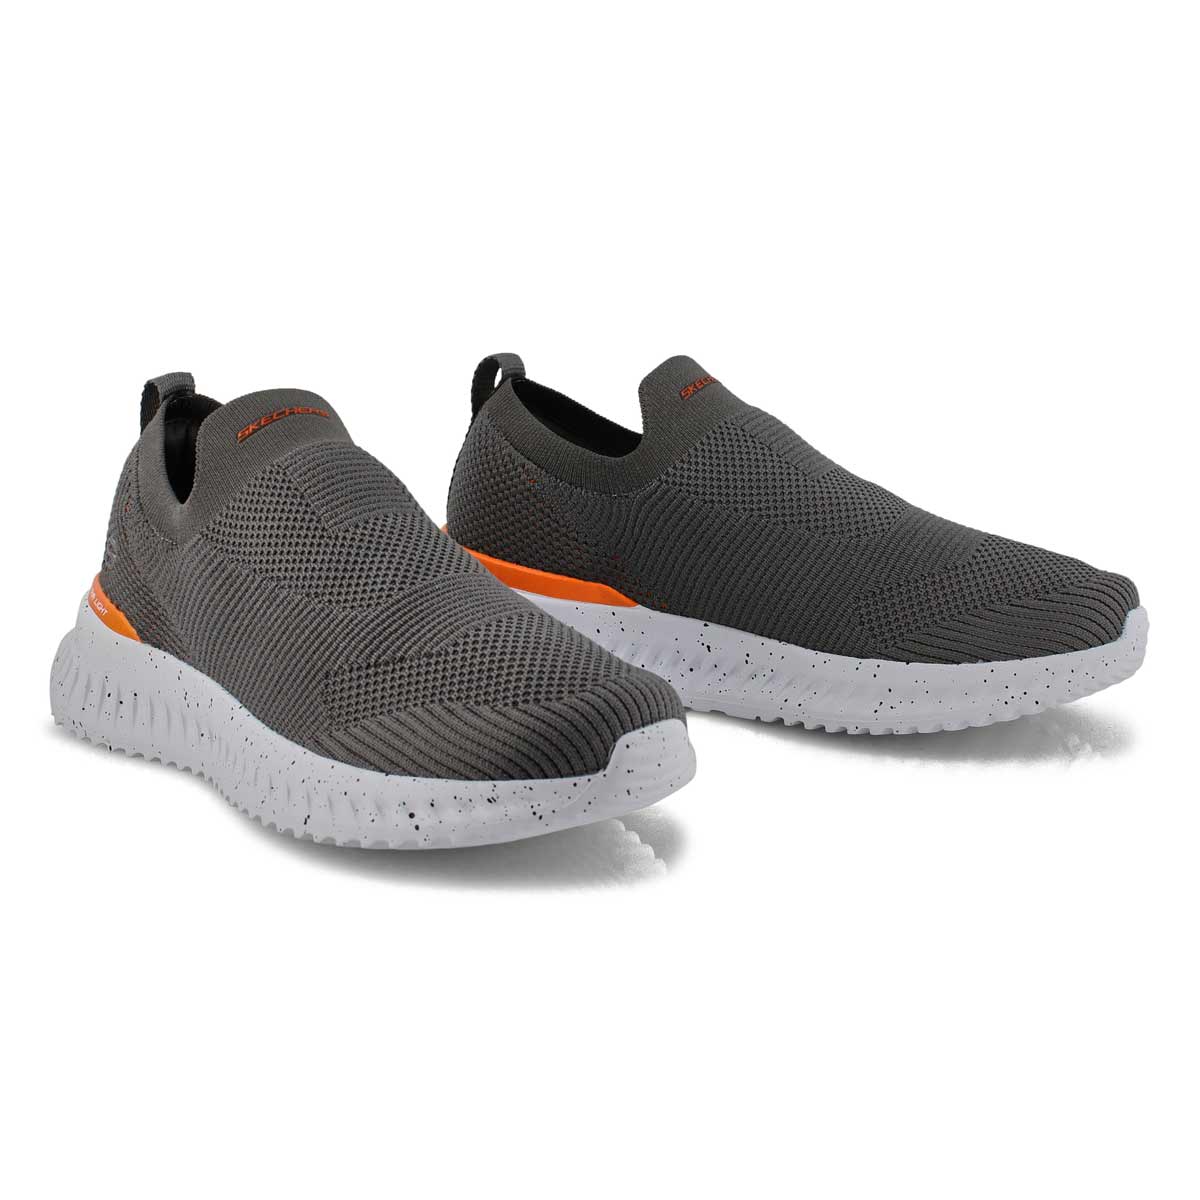 Men's Matera 2.0 Sneakers - Grey